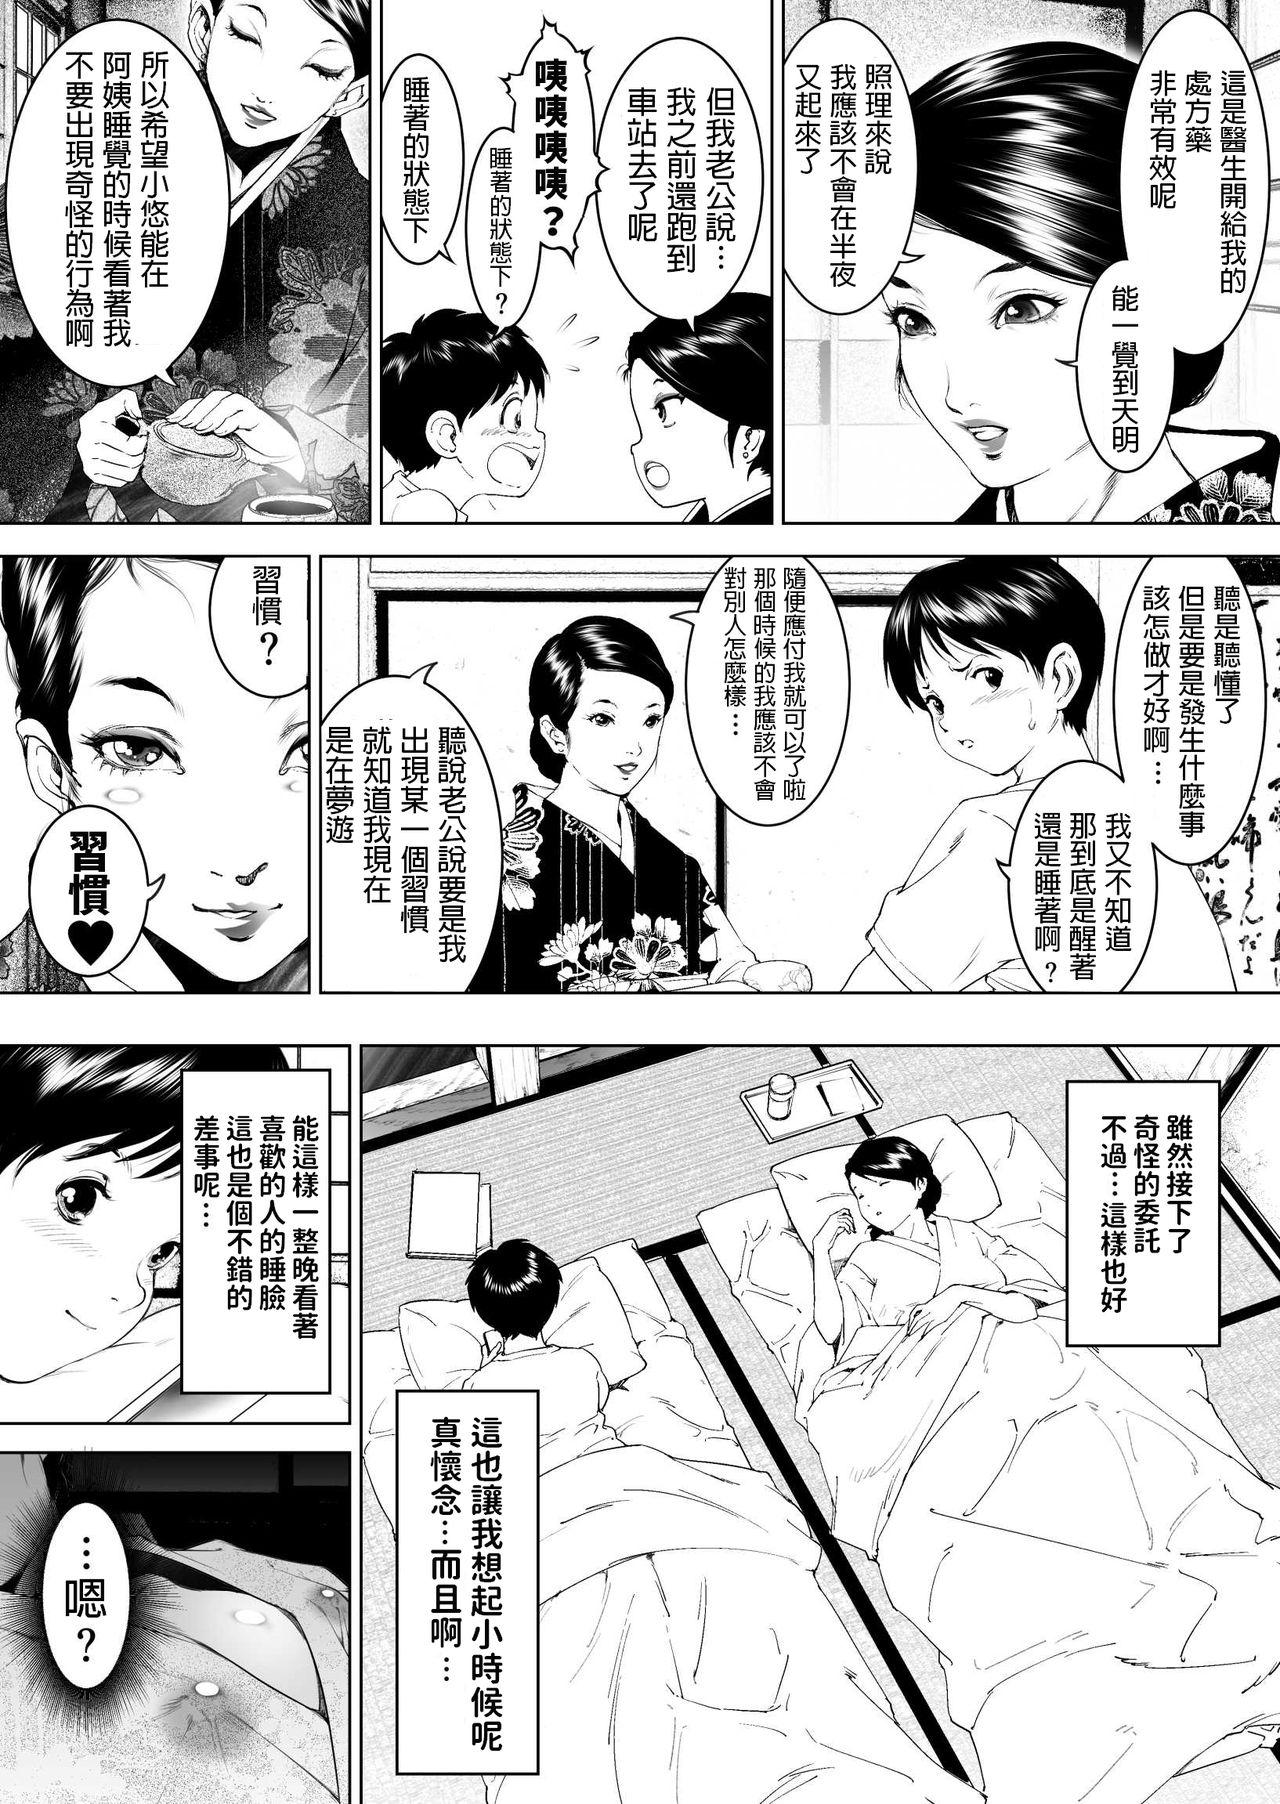 Stripping Inaka Otomari no Yobai wa, Okosazu Okasu. - Original Stepsiblings - Page 4